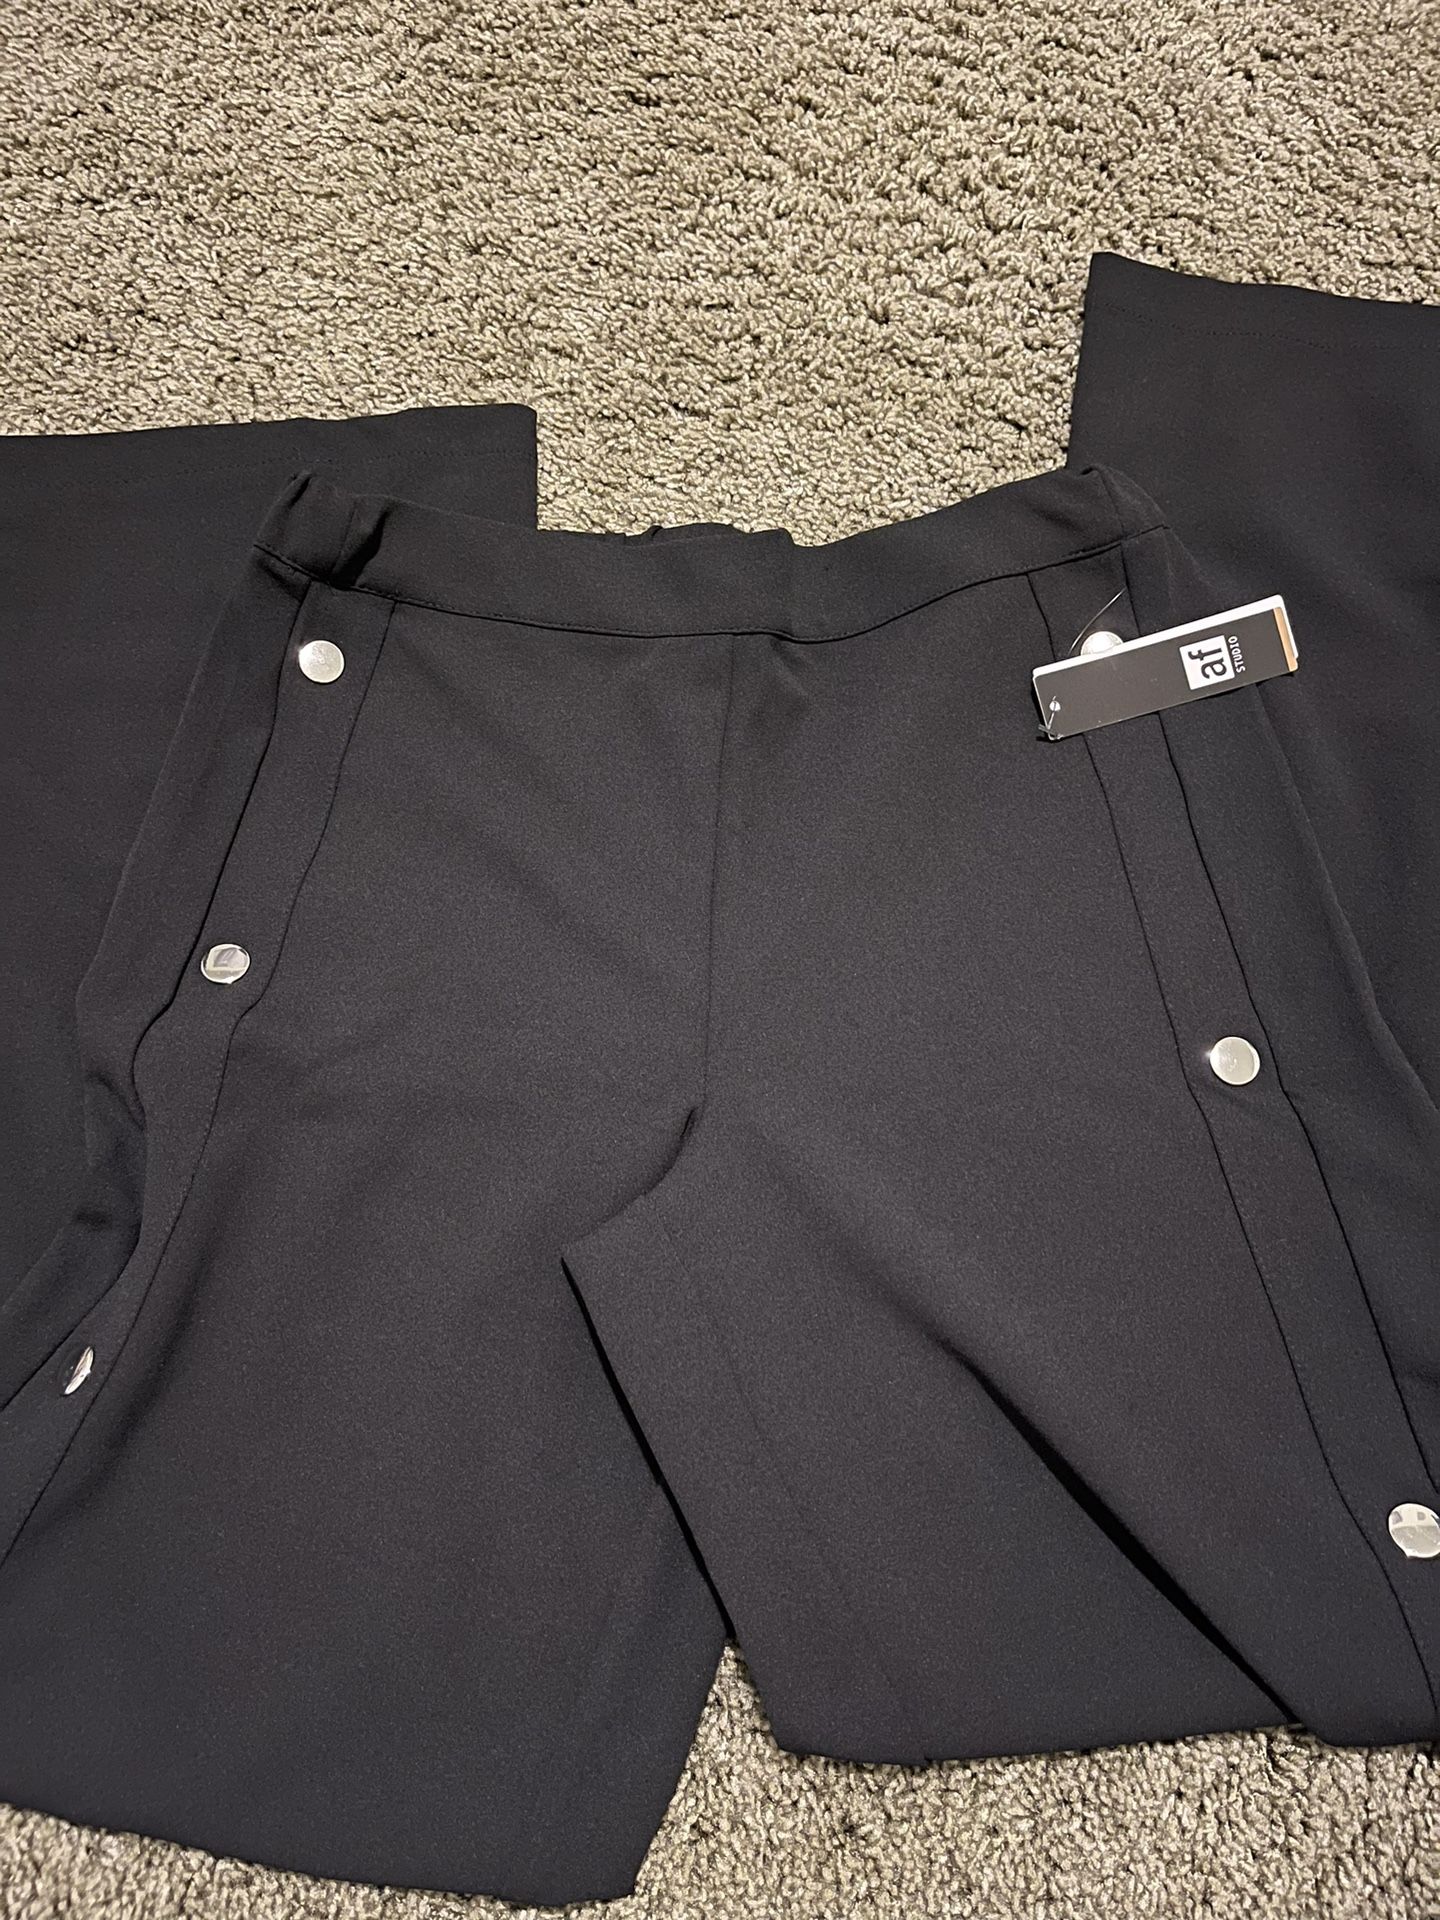 Black Dress Pants/Slack